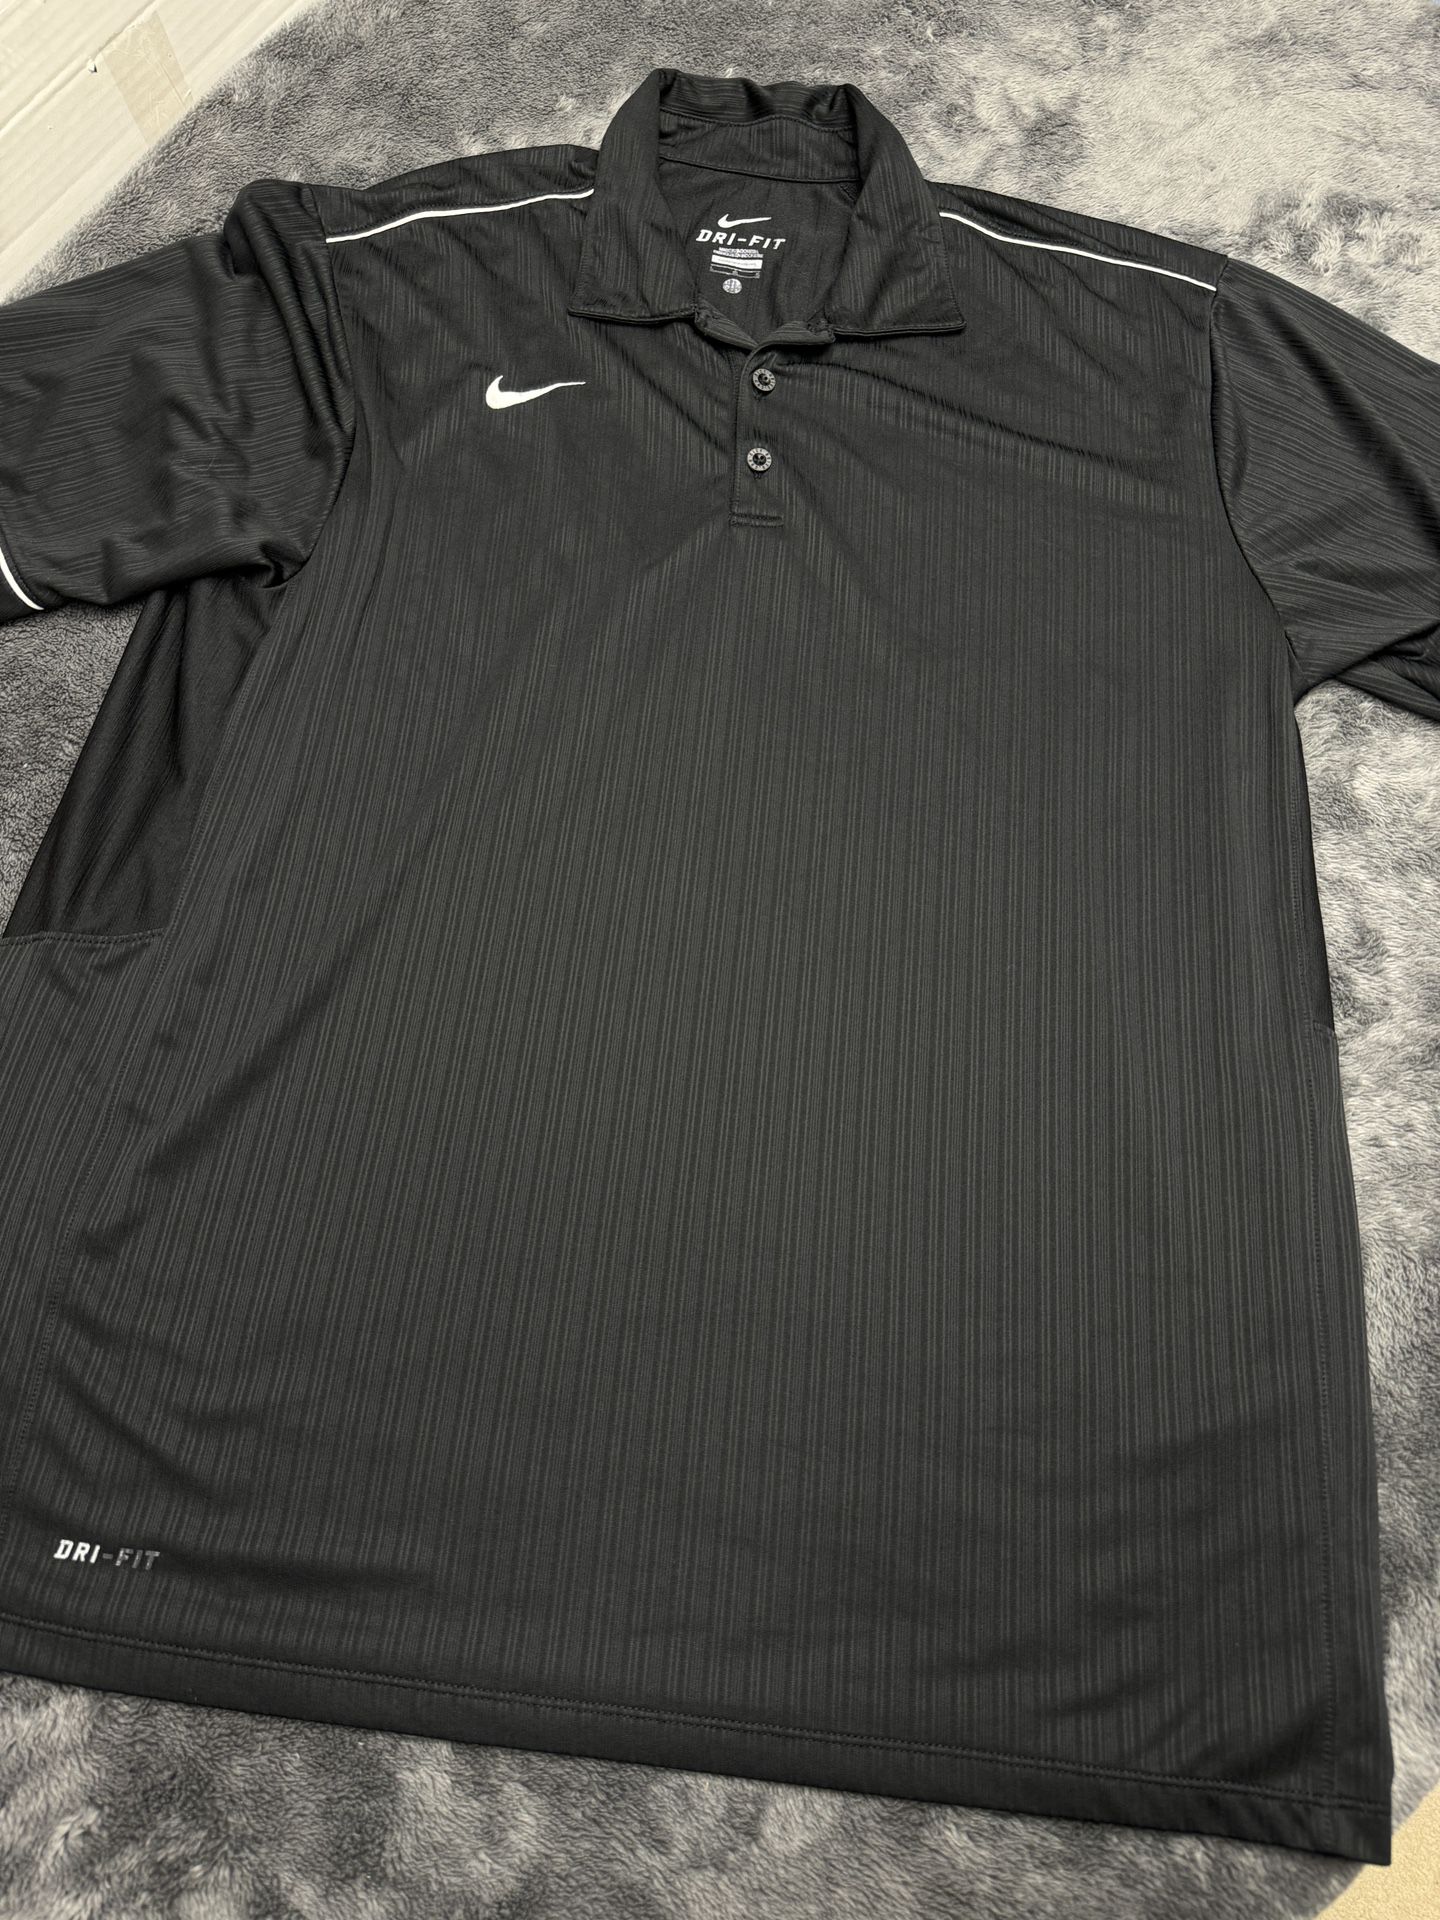 Nike Dri Fit Men’s Large Black Polo in good shape!